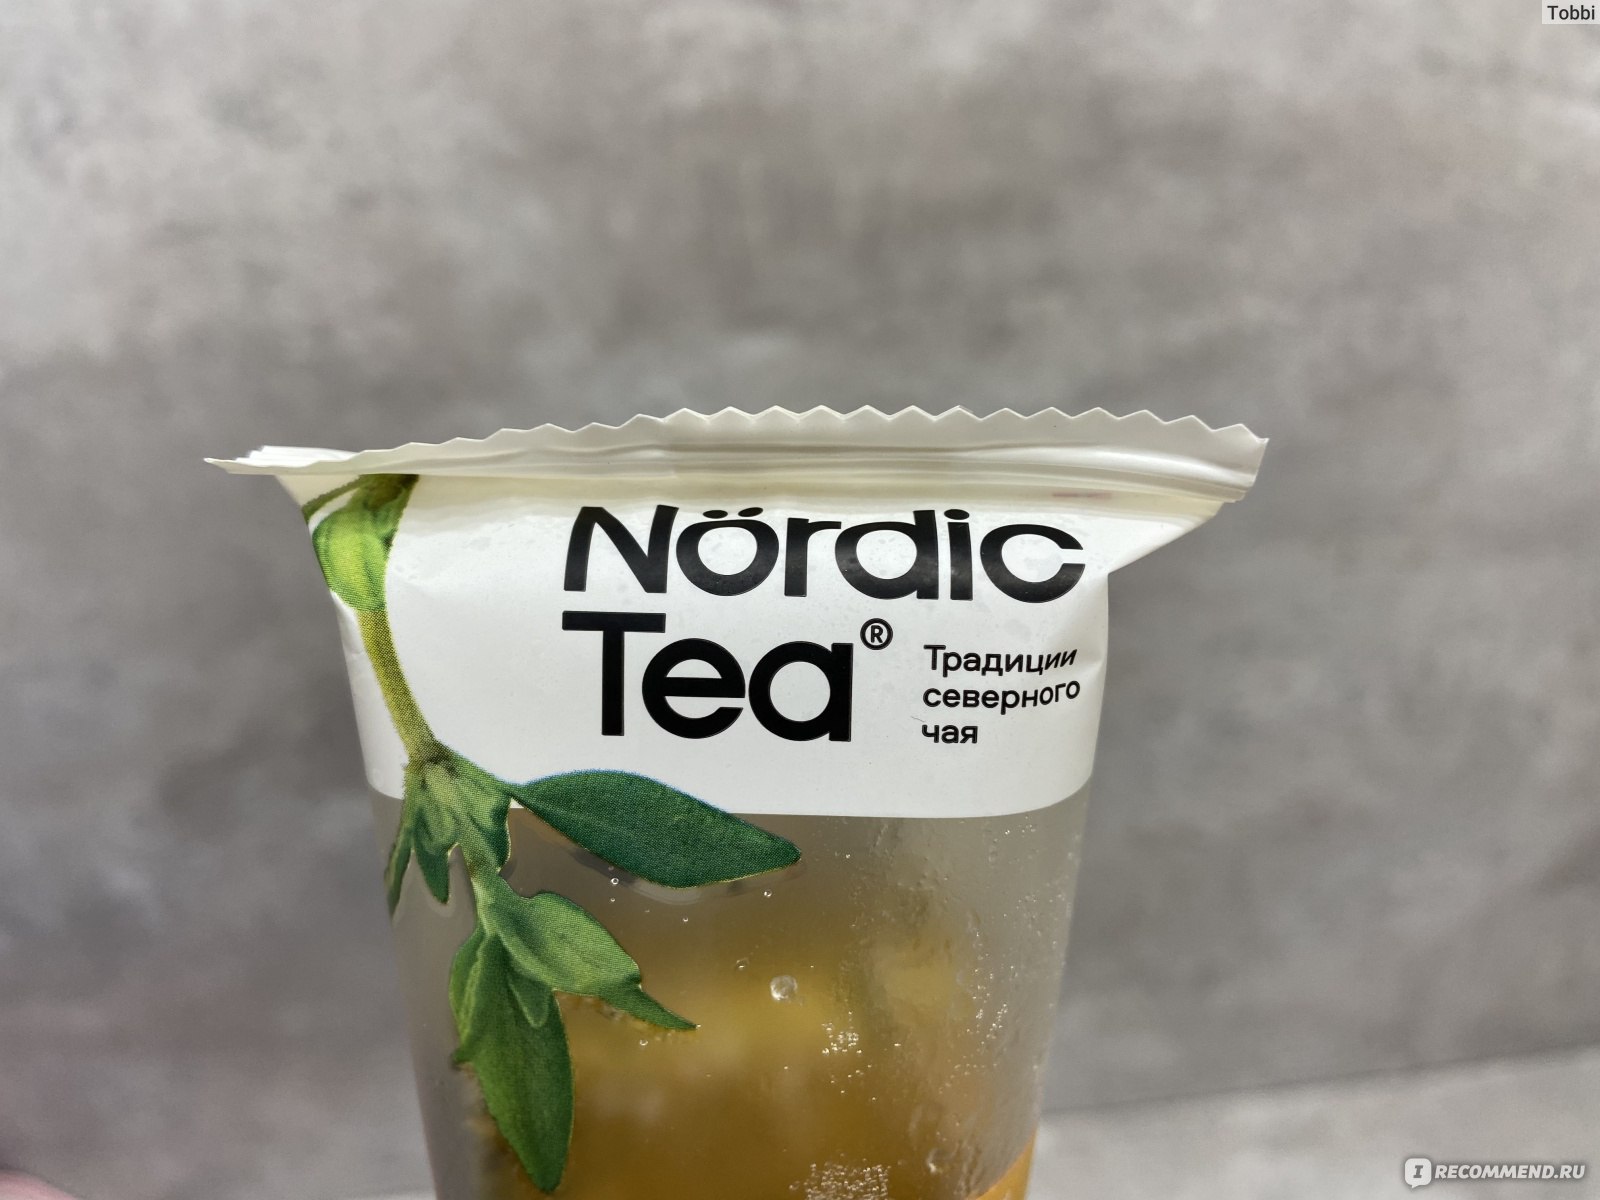 Купить северный чай